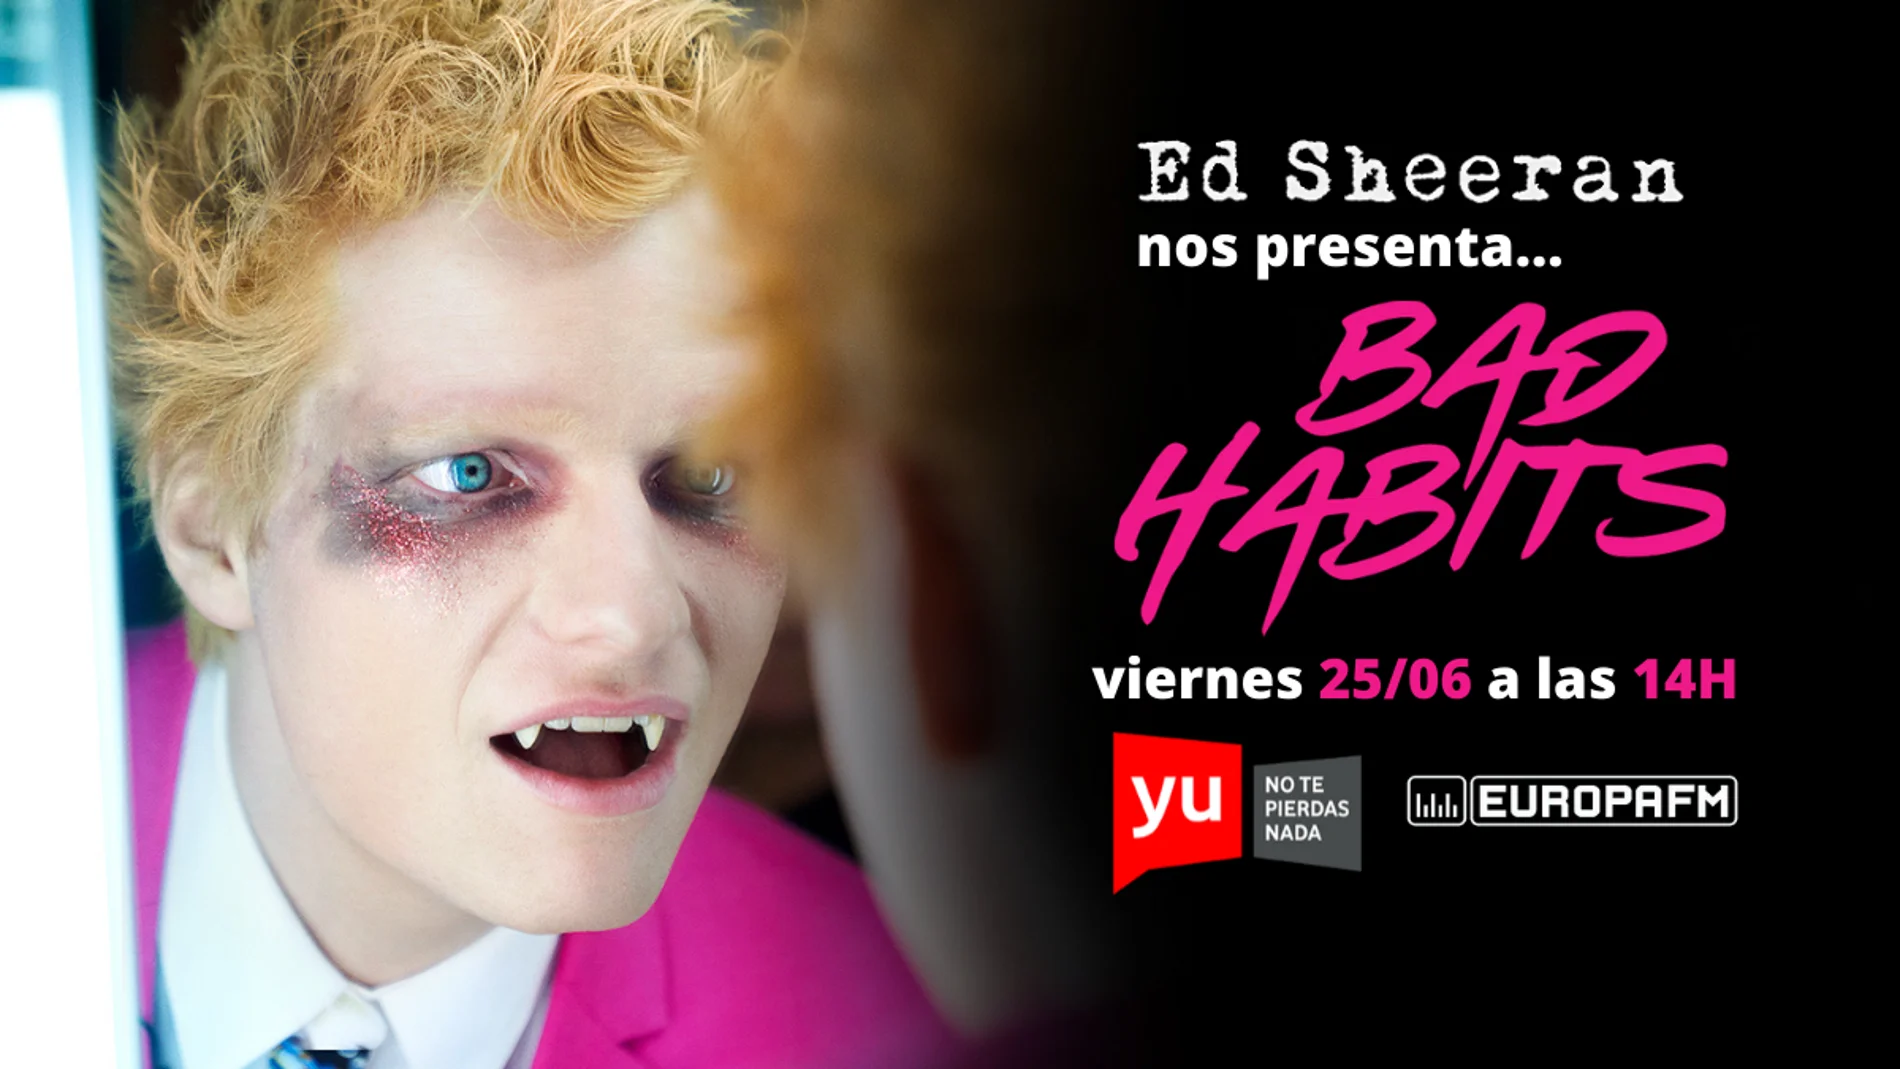 Ed Sheeran presenta 'Bad Habits' en yu No te pierdas nada este viernes 